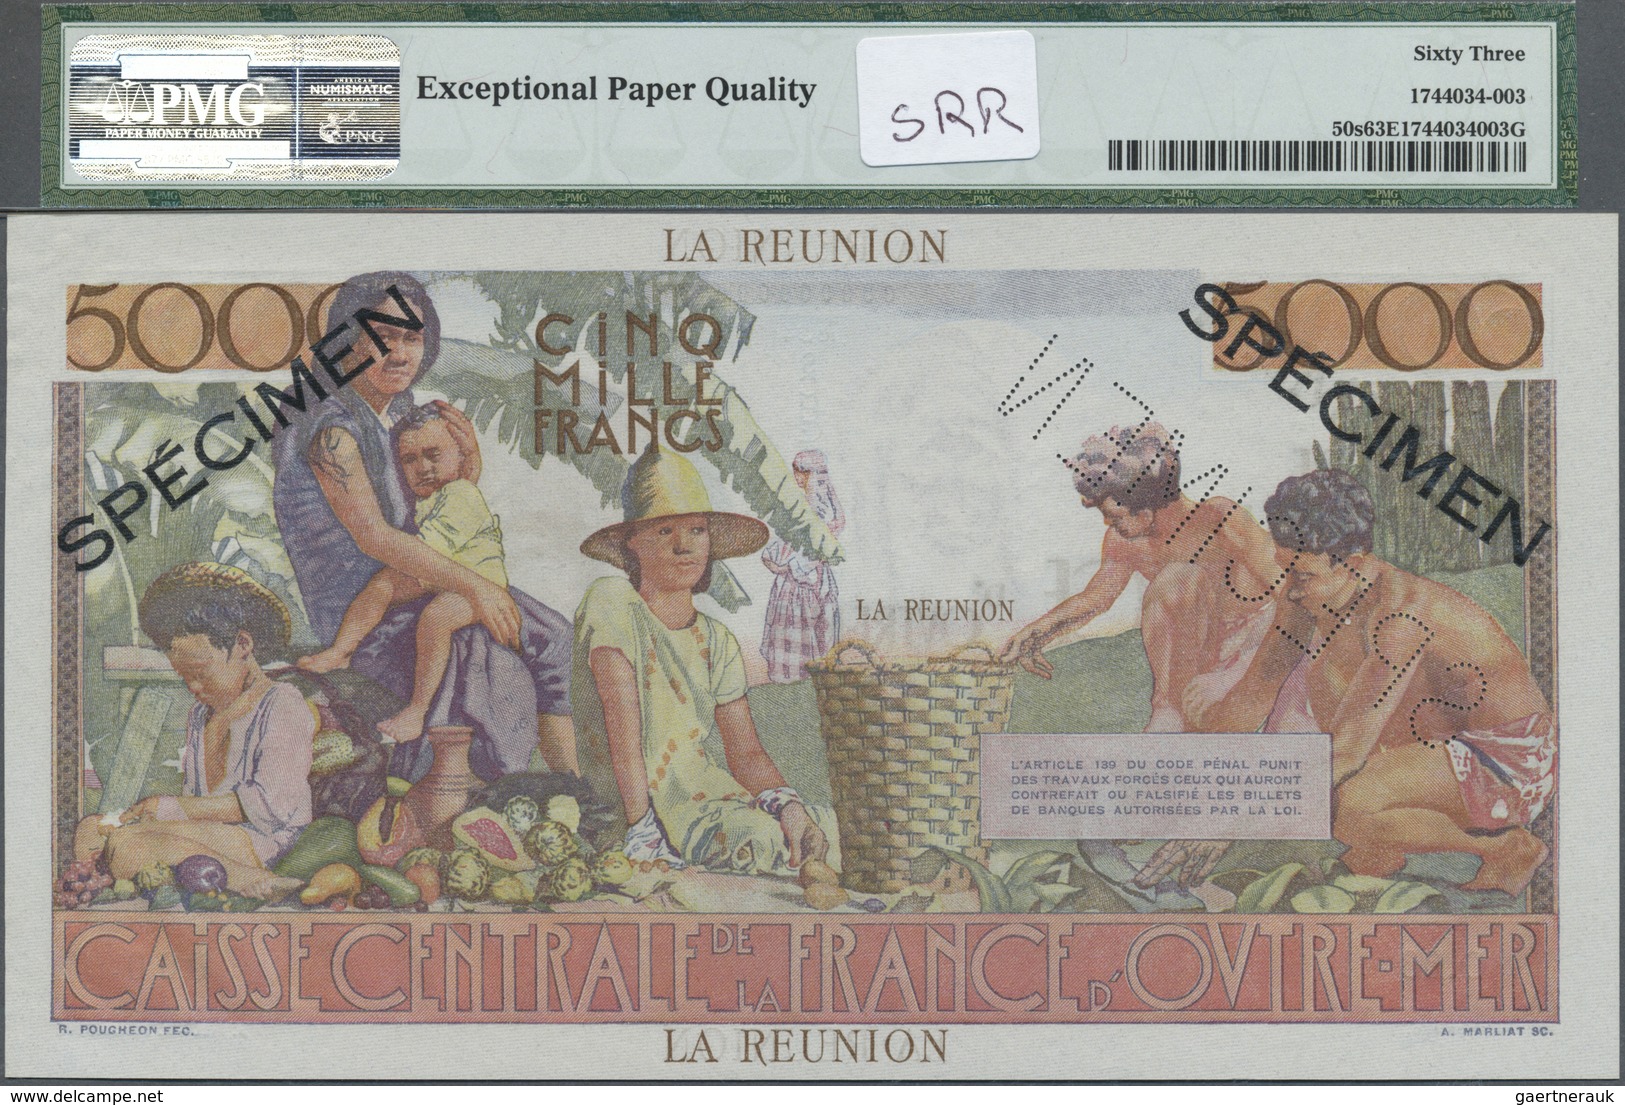 Réunion: 5000 Francs ND(1960) P. 50s, PMG Graded 63 Choice UNC EPQ. - Reunion